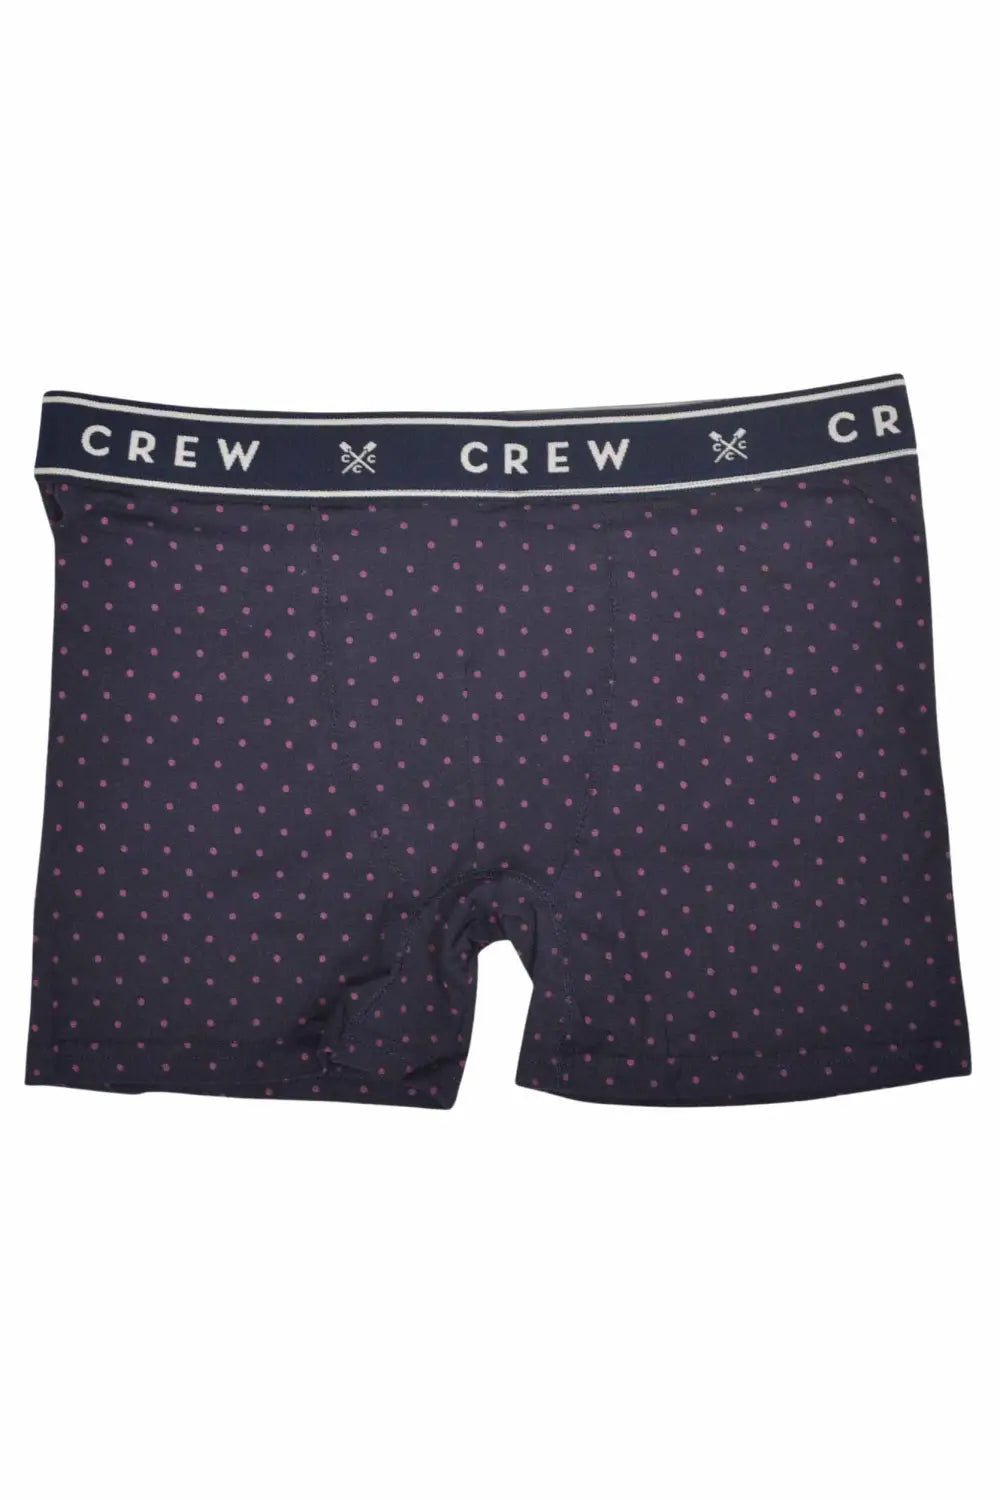 Crew Clothing Premium Boxers (3 Pack)